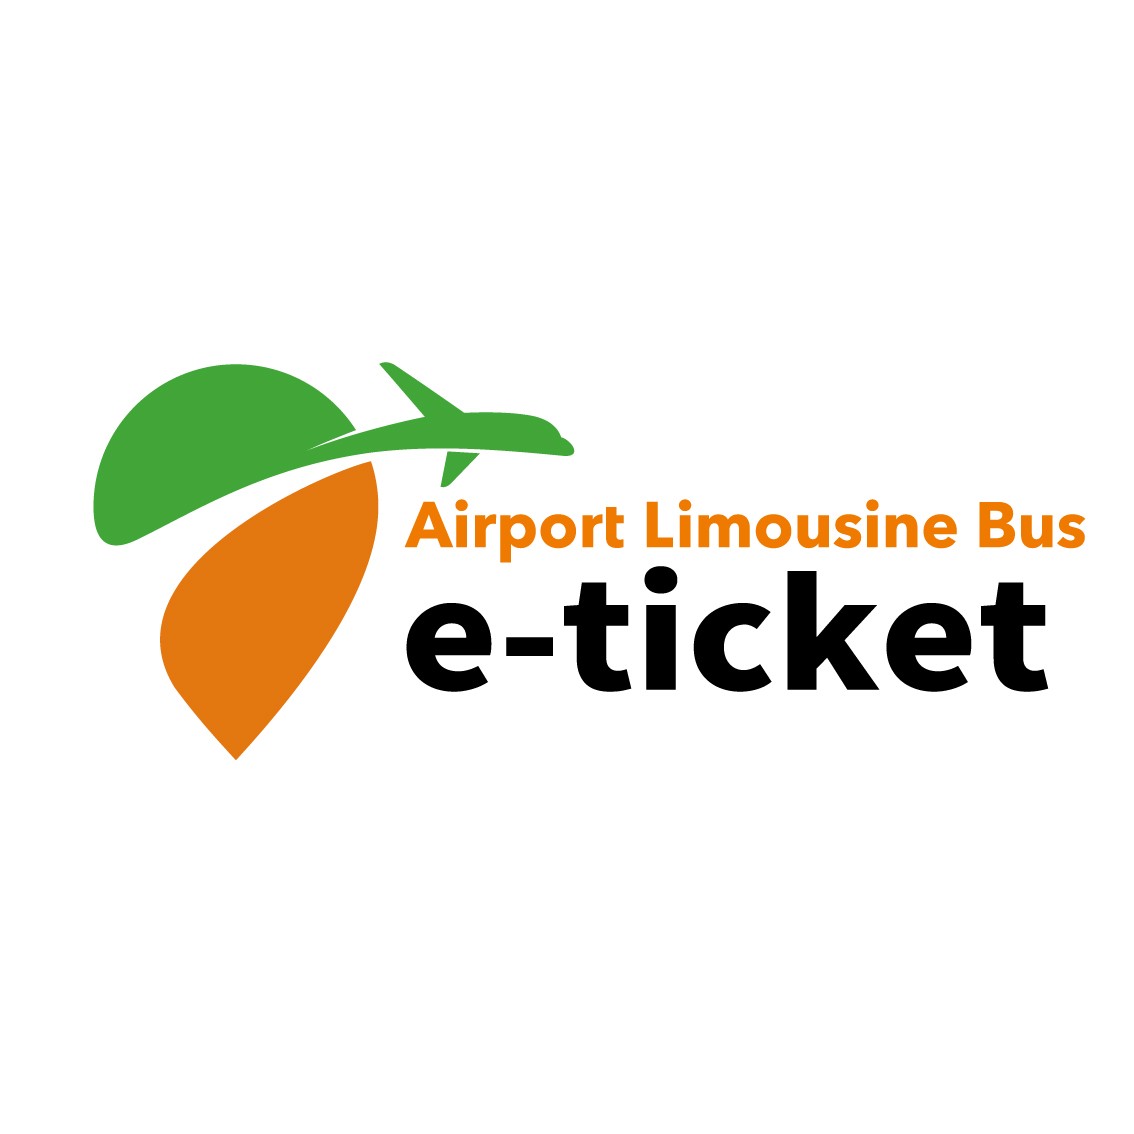 Limousine Bus E-Ticket